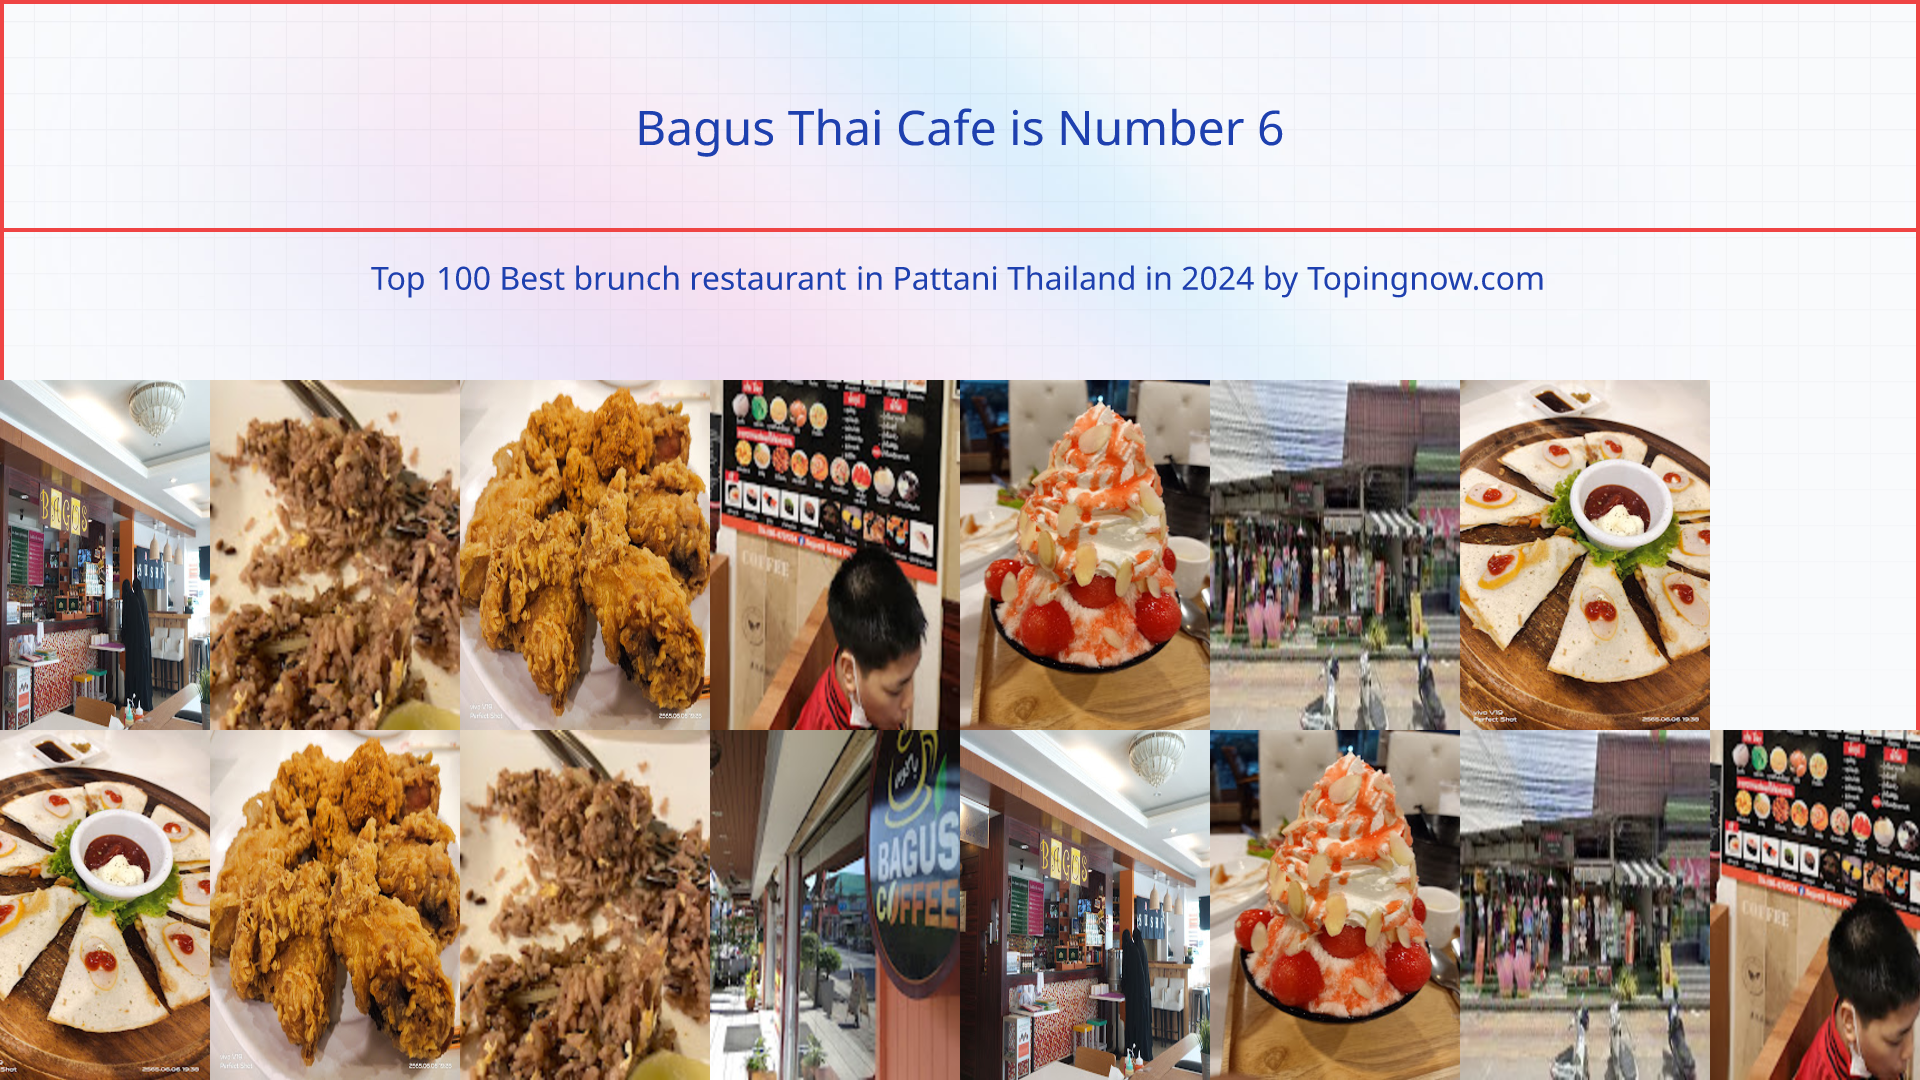 Bagus Thai Cafe: Top 100 Best brunch restaurant in Pattani Thailand in 2024